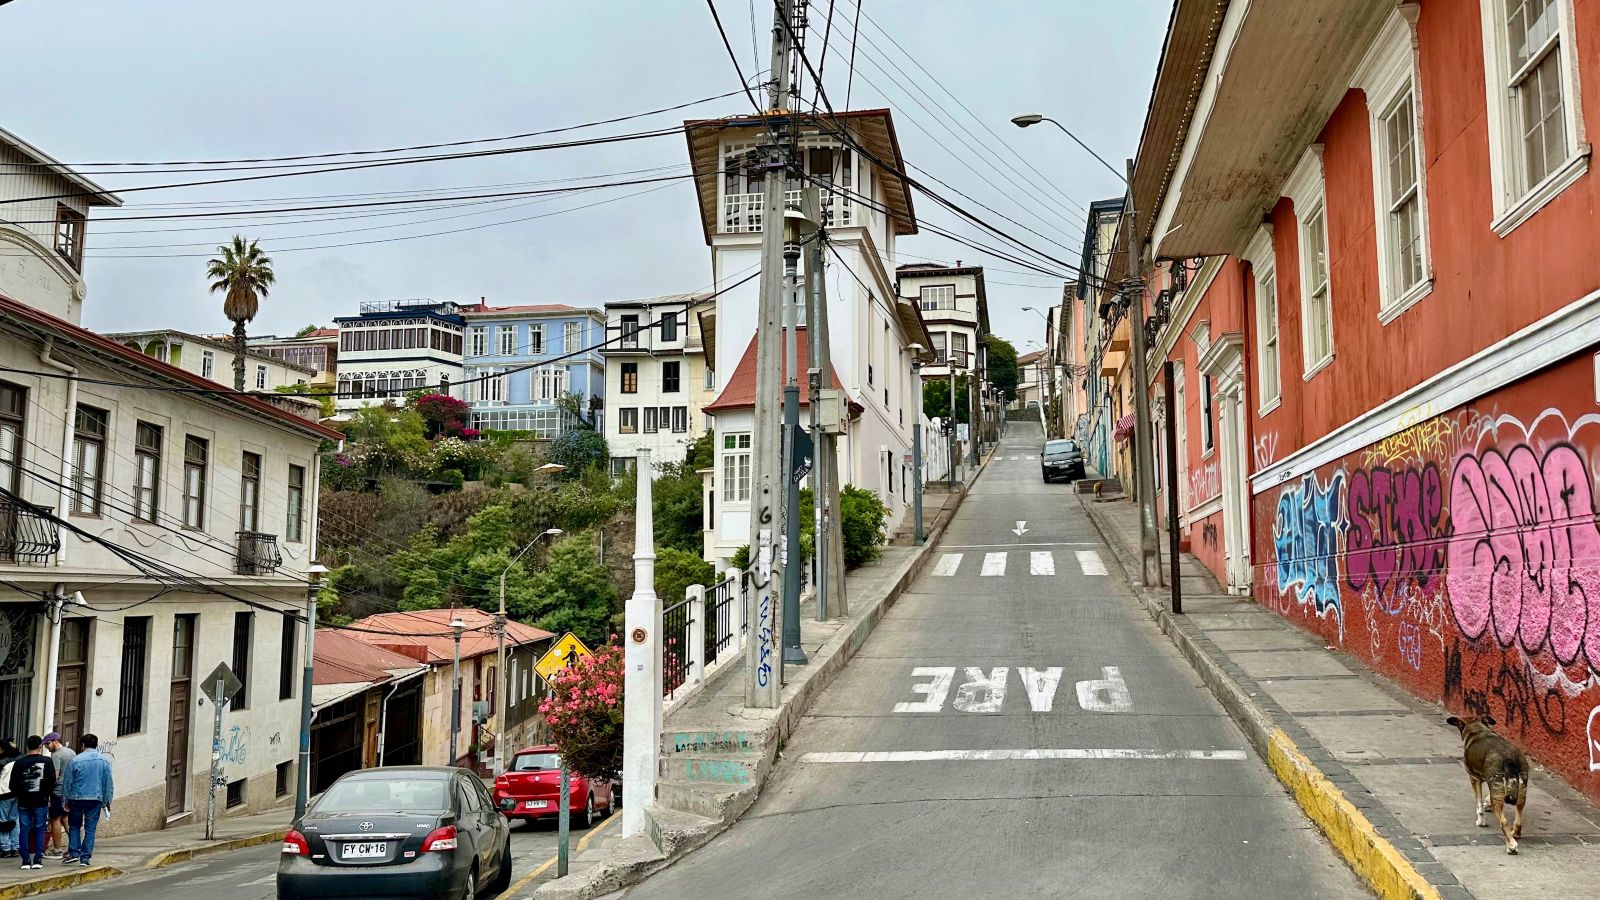 Valparaiso streets